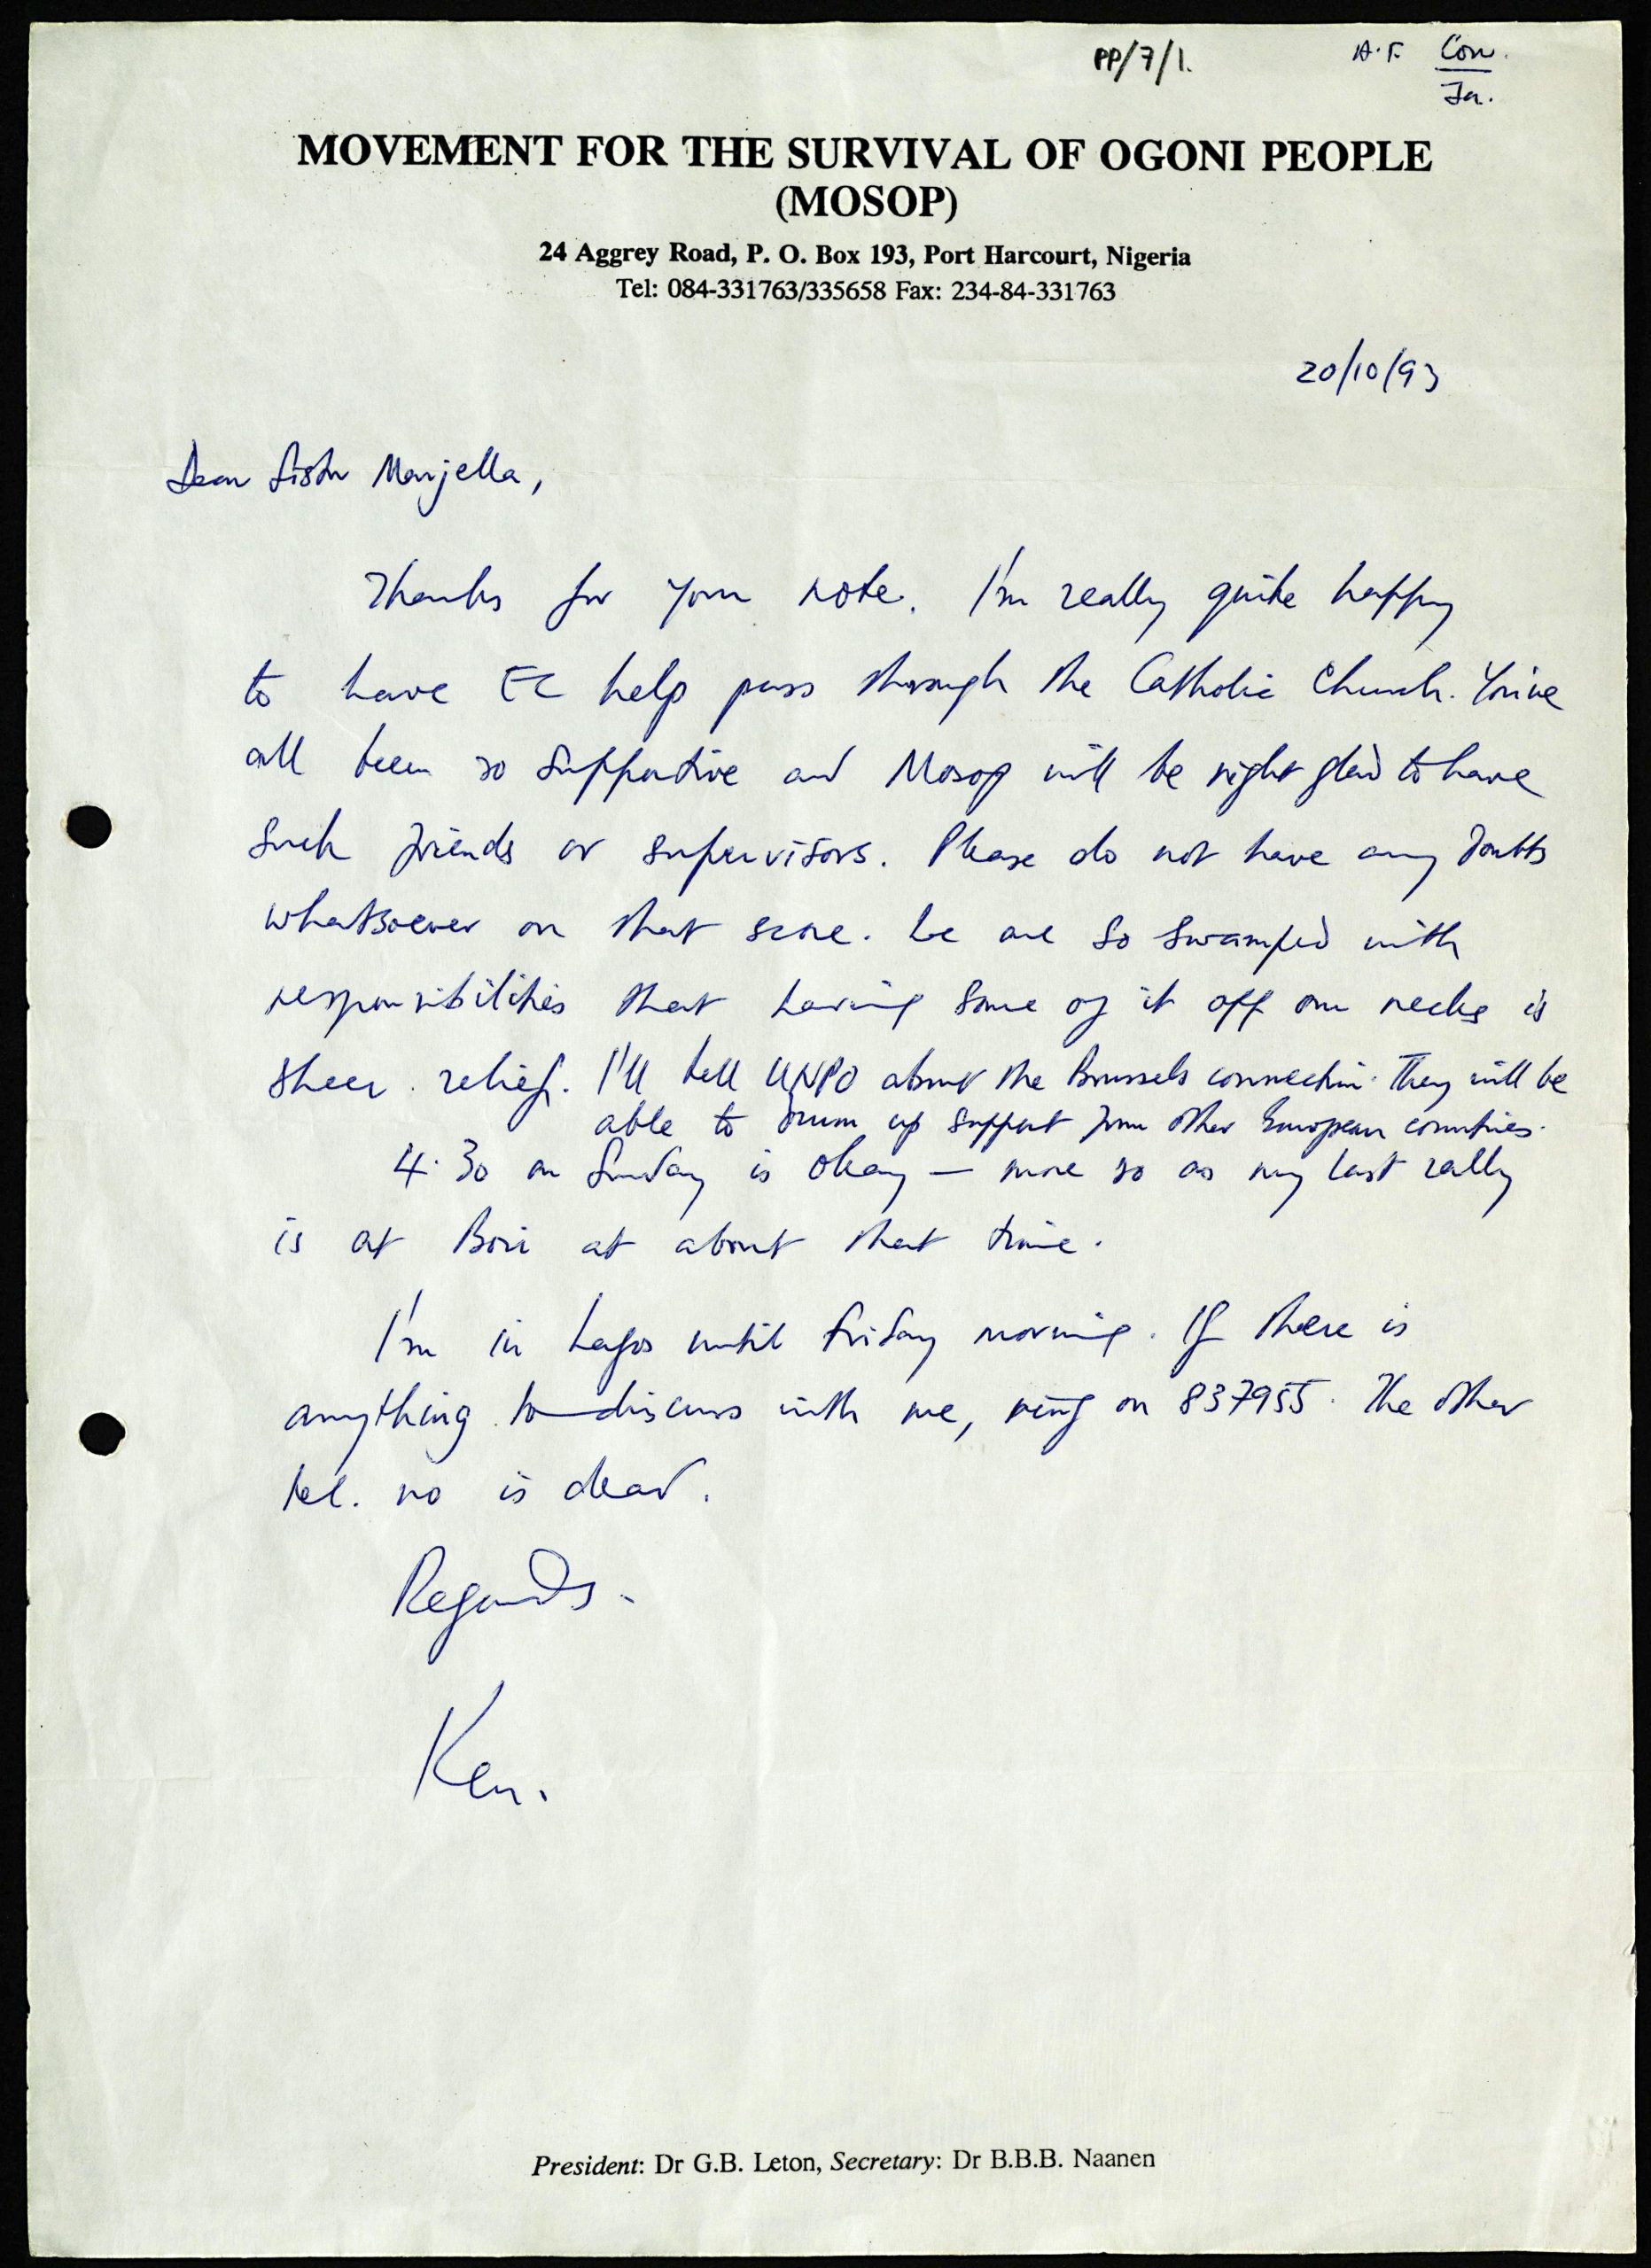 Letter from Ken Saro-Wiwa to Sr. Majella McCarron, 20/10/93. Maynooth University Ken Saro-Wiwa Archive